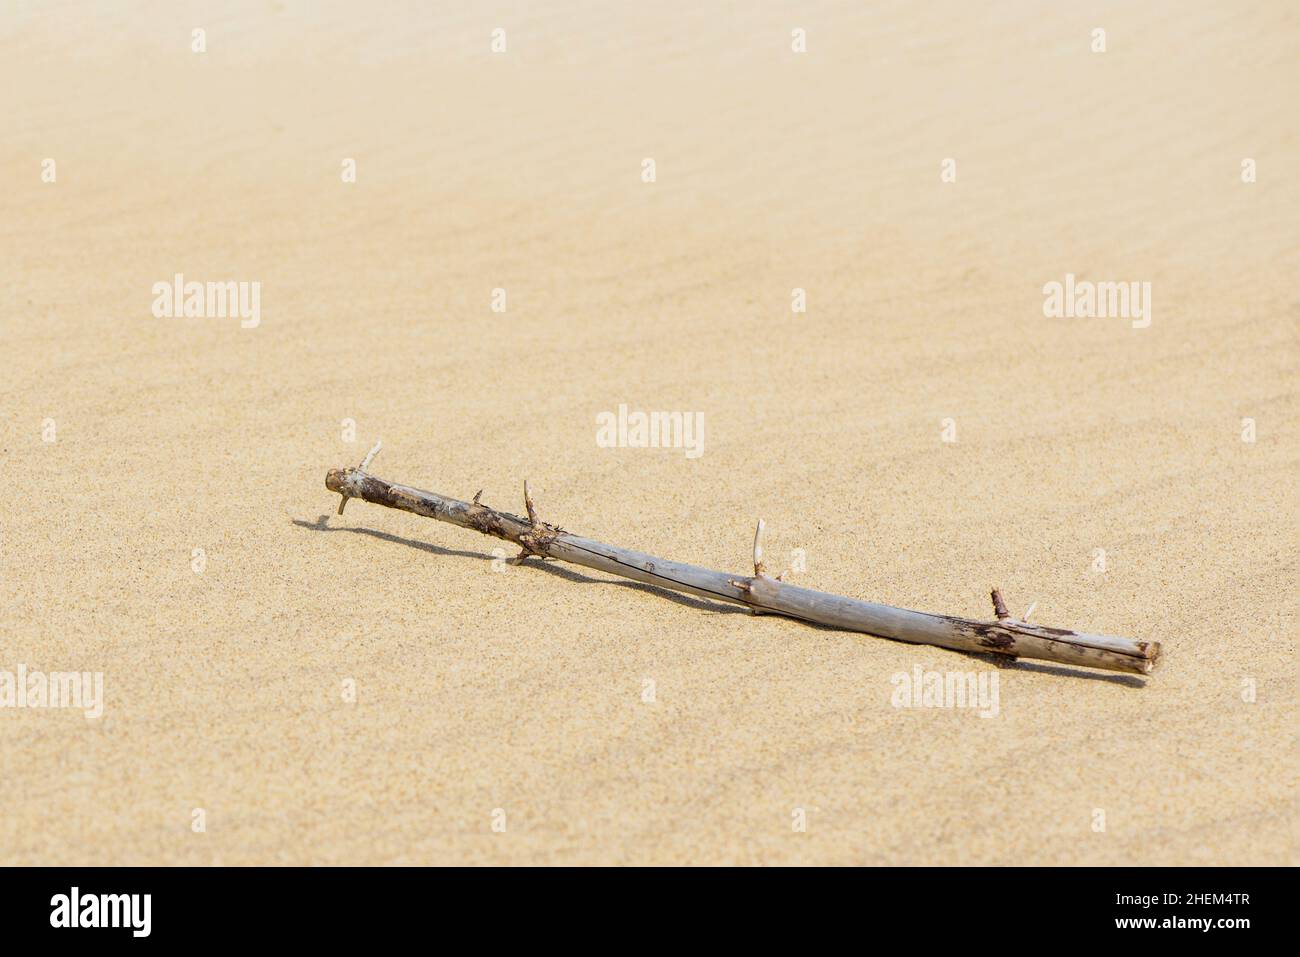 Une branche sèche d'un arbre se trouve dans le désert sablonneux.La branche se trouve sur le sable qui jette une ombre dure Banque D'Images